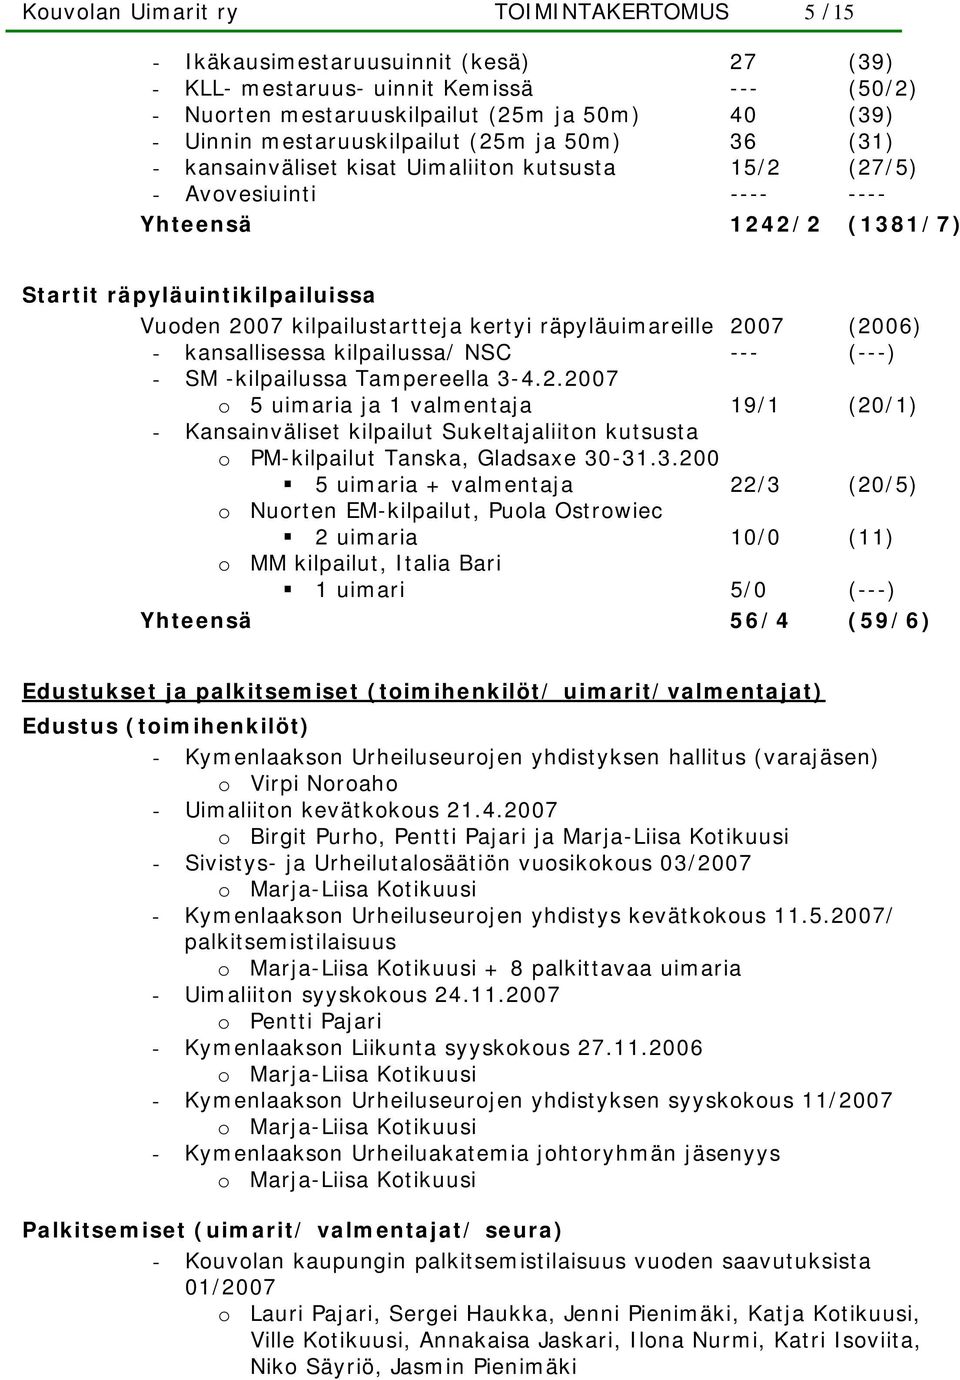 kilpailustartteja kertyi räpyläuimareille 2007 (2006) - kansallisessa kilpailussa/ NSC --- (---) - SM -kilpailussa Tampereella 3-4.2.2007 o 5 uimaria ja 1 valmentaja 19/1 (20/1) - Kansainväliset kilpailut Sukeltajaliiton kutsusta o PM-kilpailut Tanska, Gladsaxe 30-31.